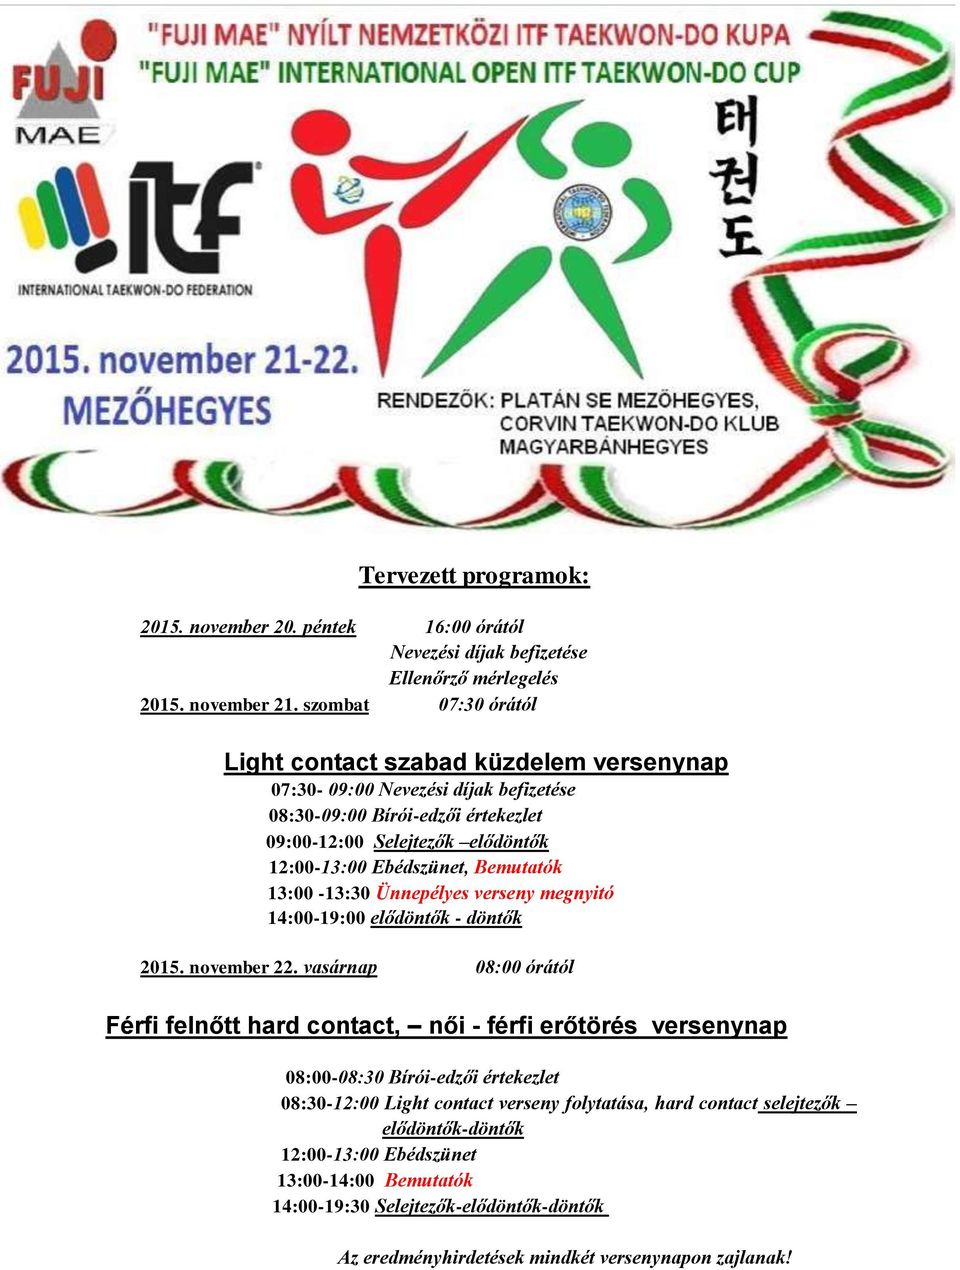 Ebédszünet, Bemutatók 13:00-13:30 Ünnepélyes verseny megnyitó 14:00-19:00 elődöntők - döntők 2015. november 22.